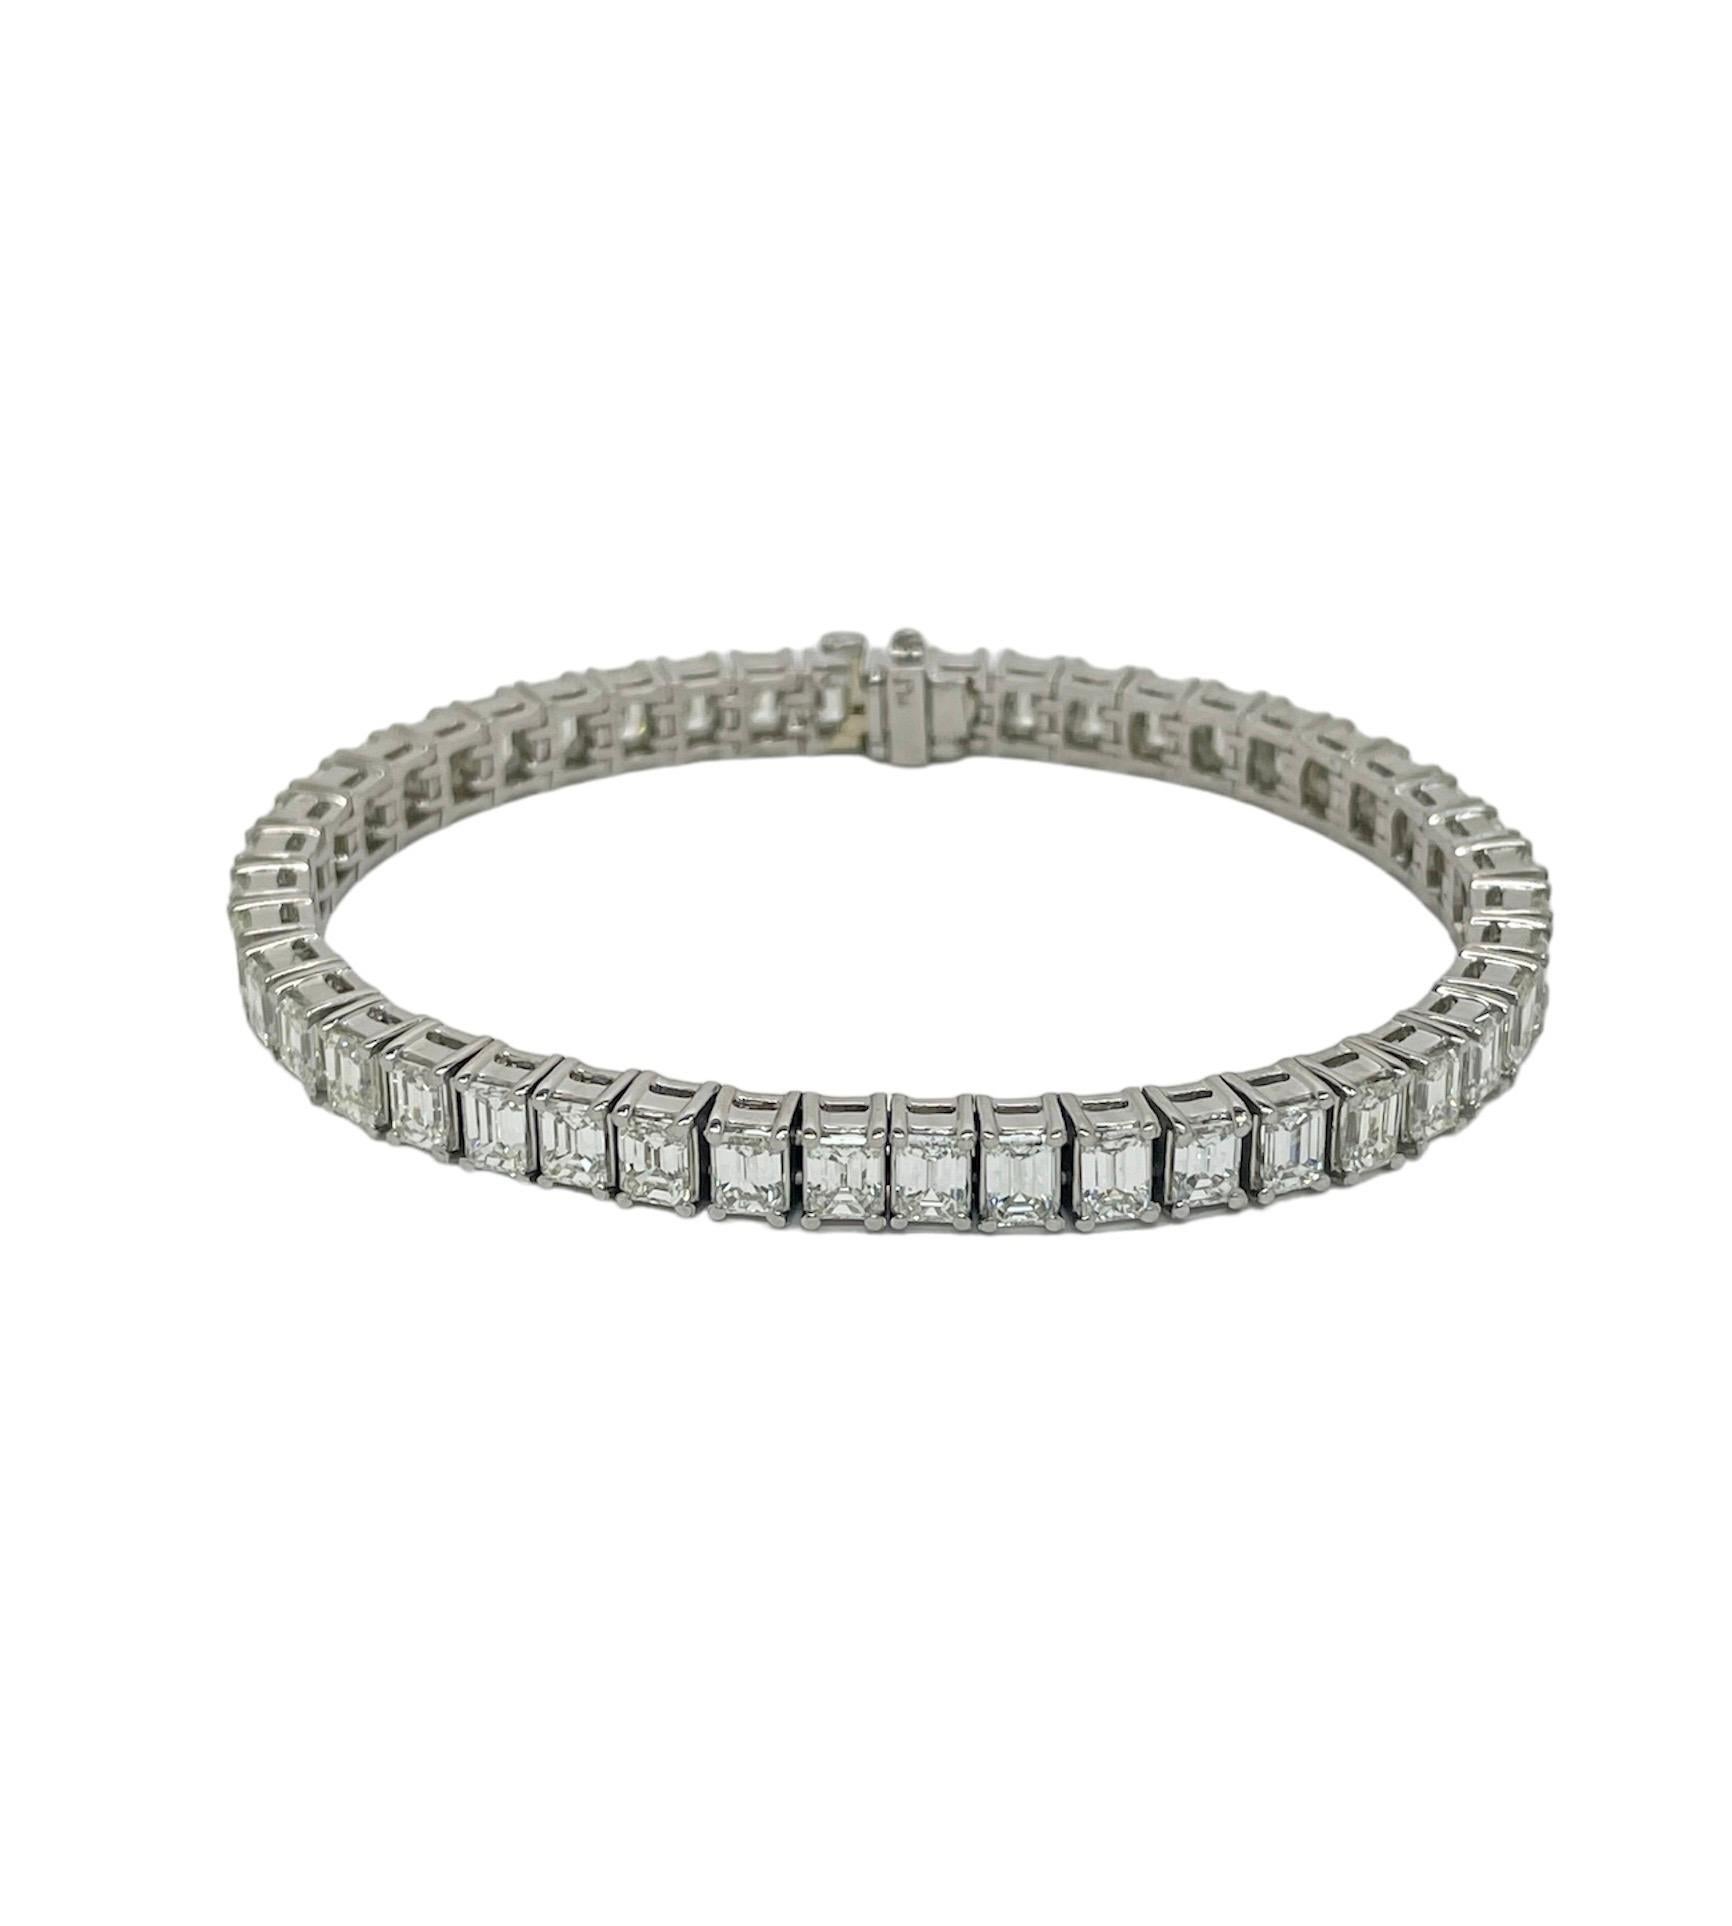 Ce bracelet super classique contient 45 diamants de taille émeraude pesant environ 14,00 carats au total. Collectional en platine, ce bracelet est extrêmement bien fait et constitue un ajout parfait à votre collection.

Tampon : PLT.
Matériau :